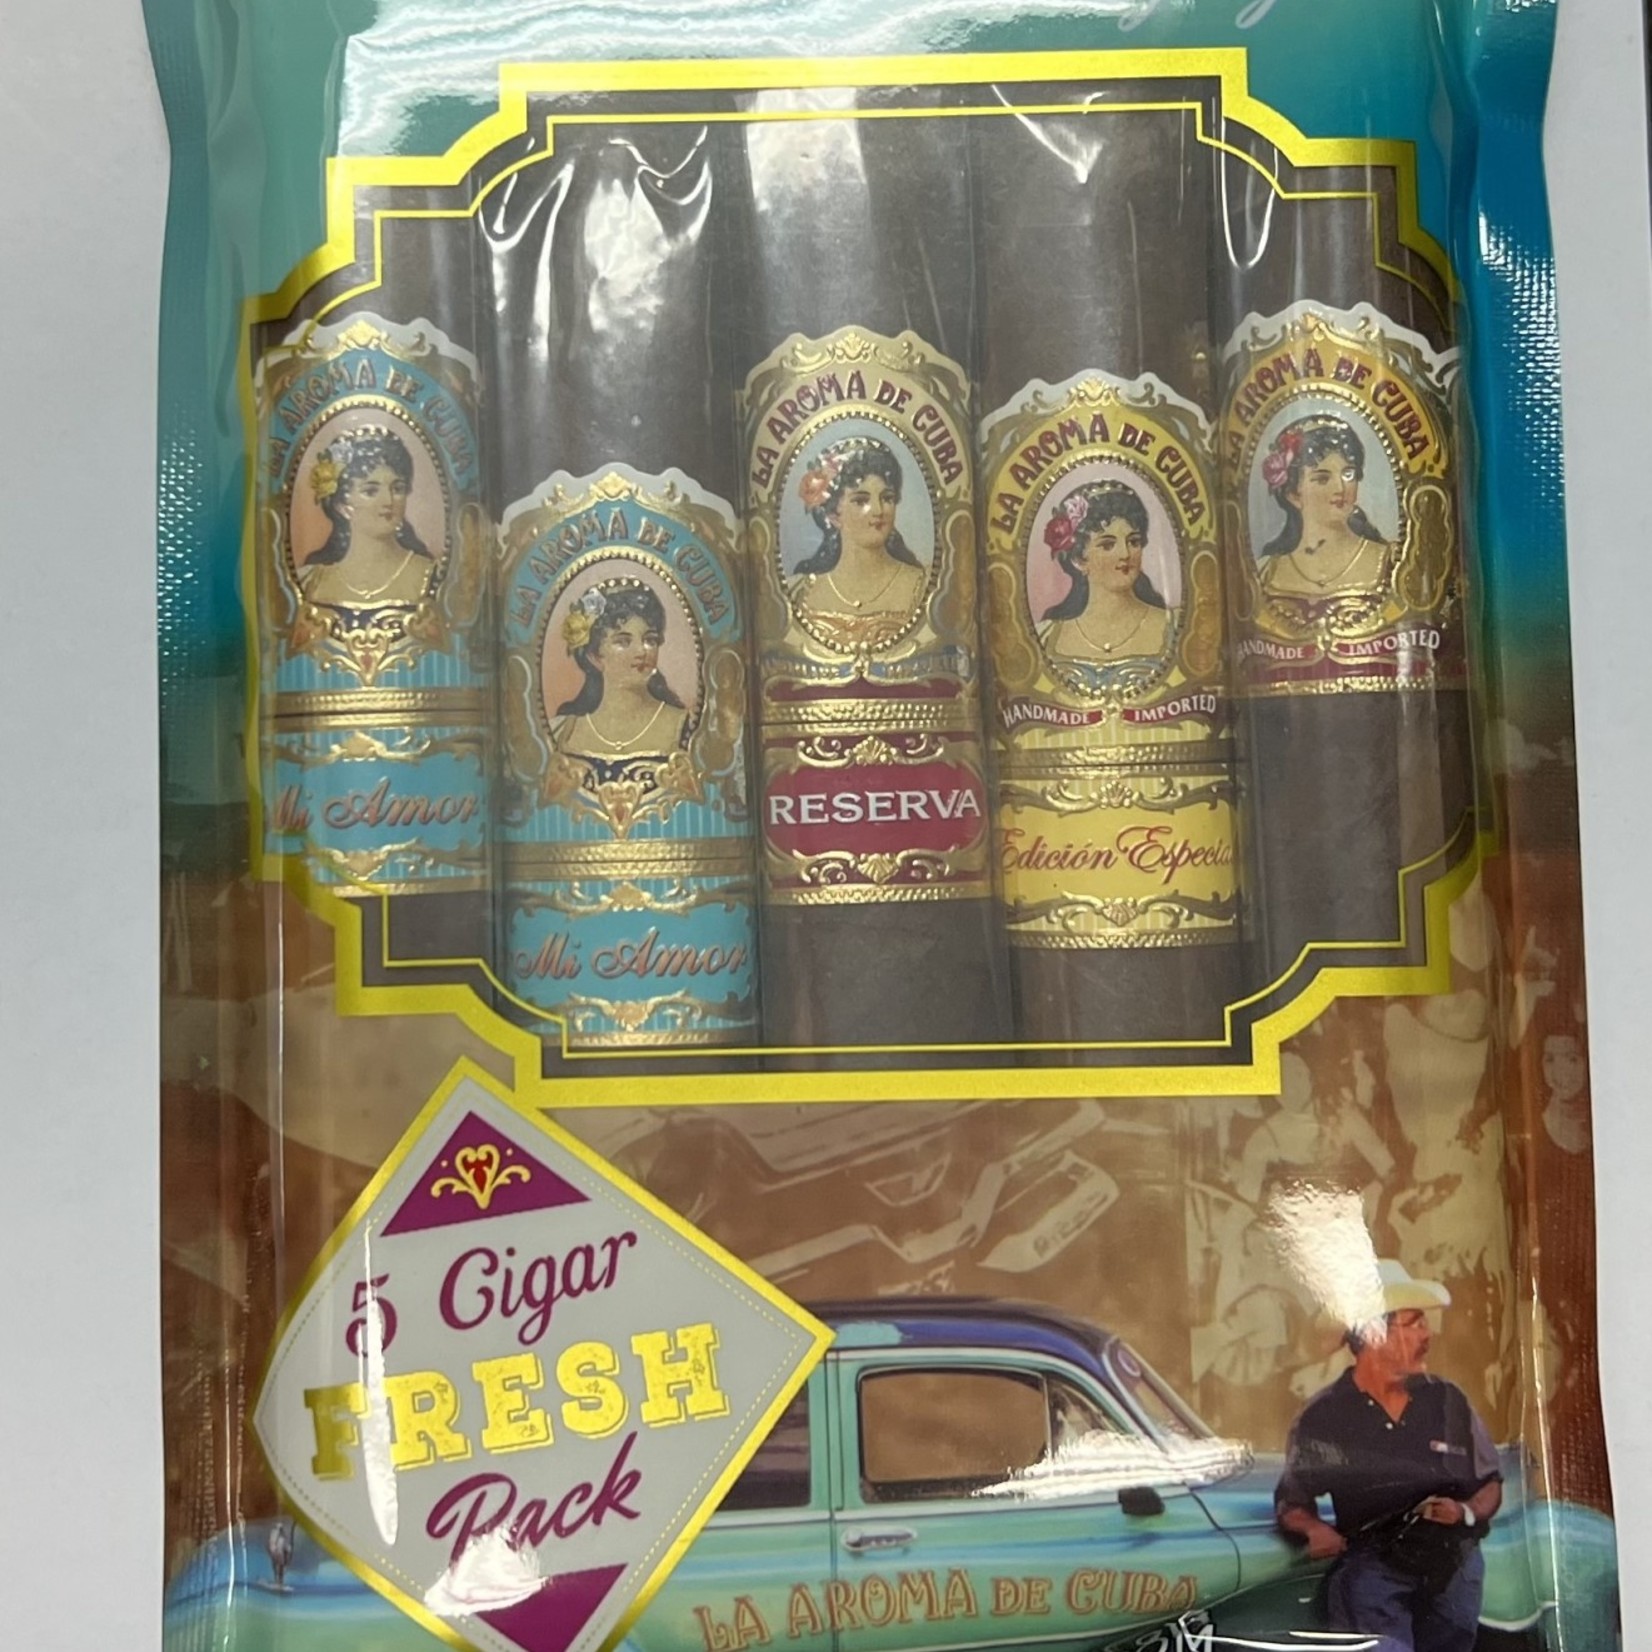 La Aroma De Cuba La Aroma De Cuba Sampler Fresh Pack